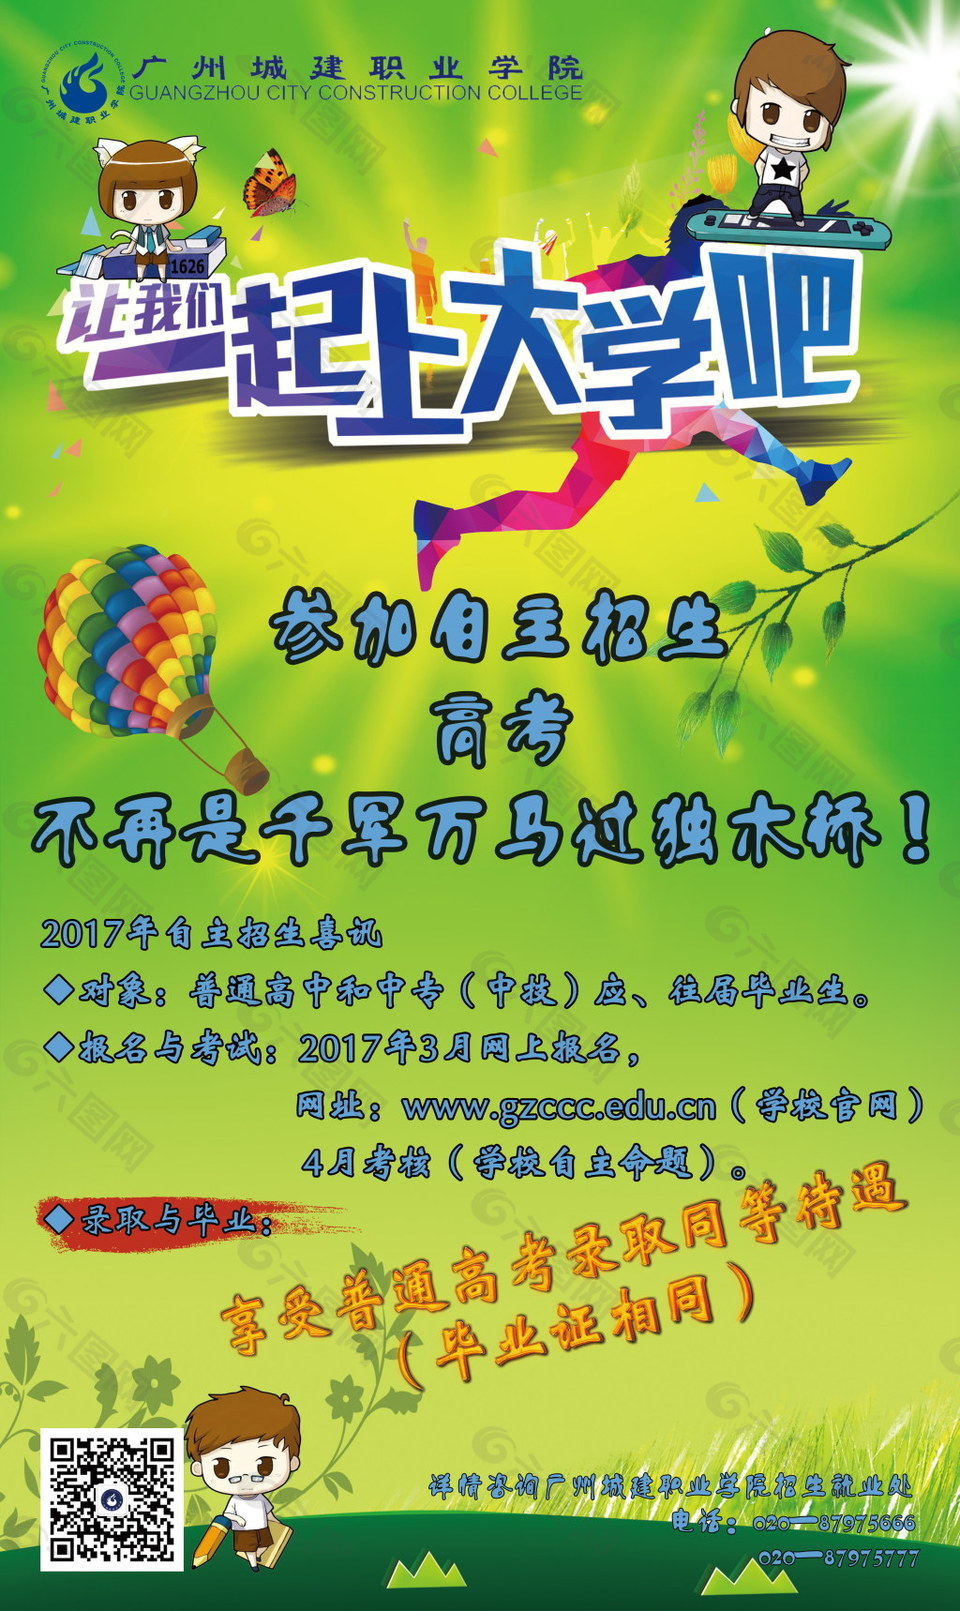 广州城建职业学院自主招生宣传海报